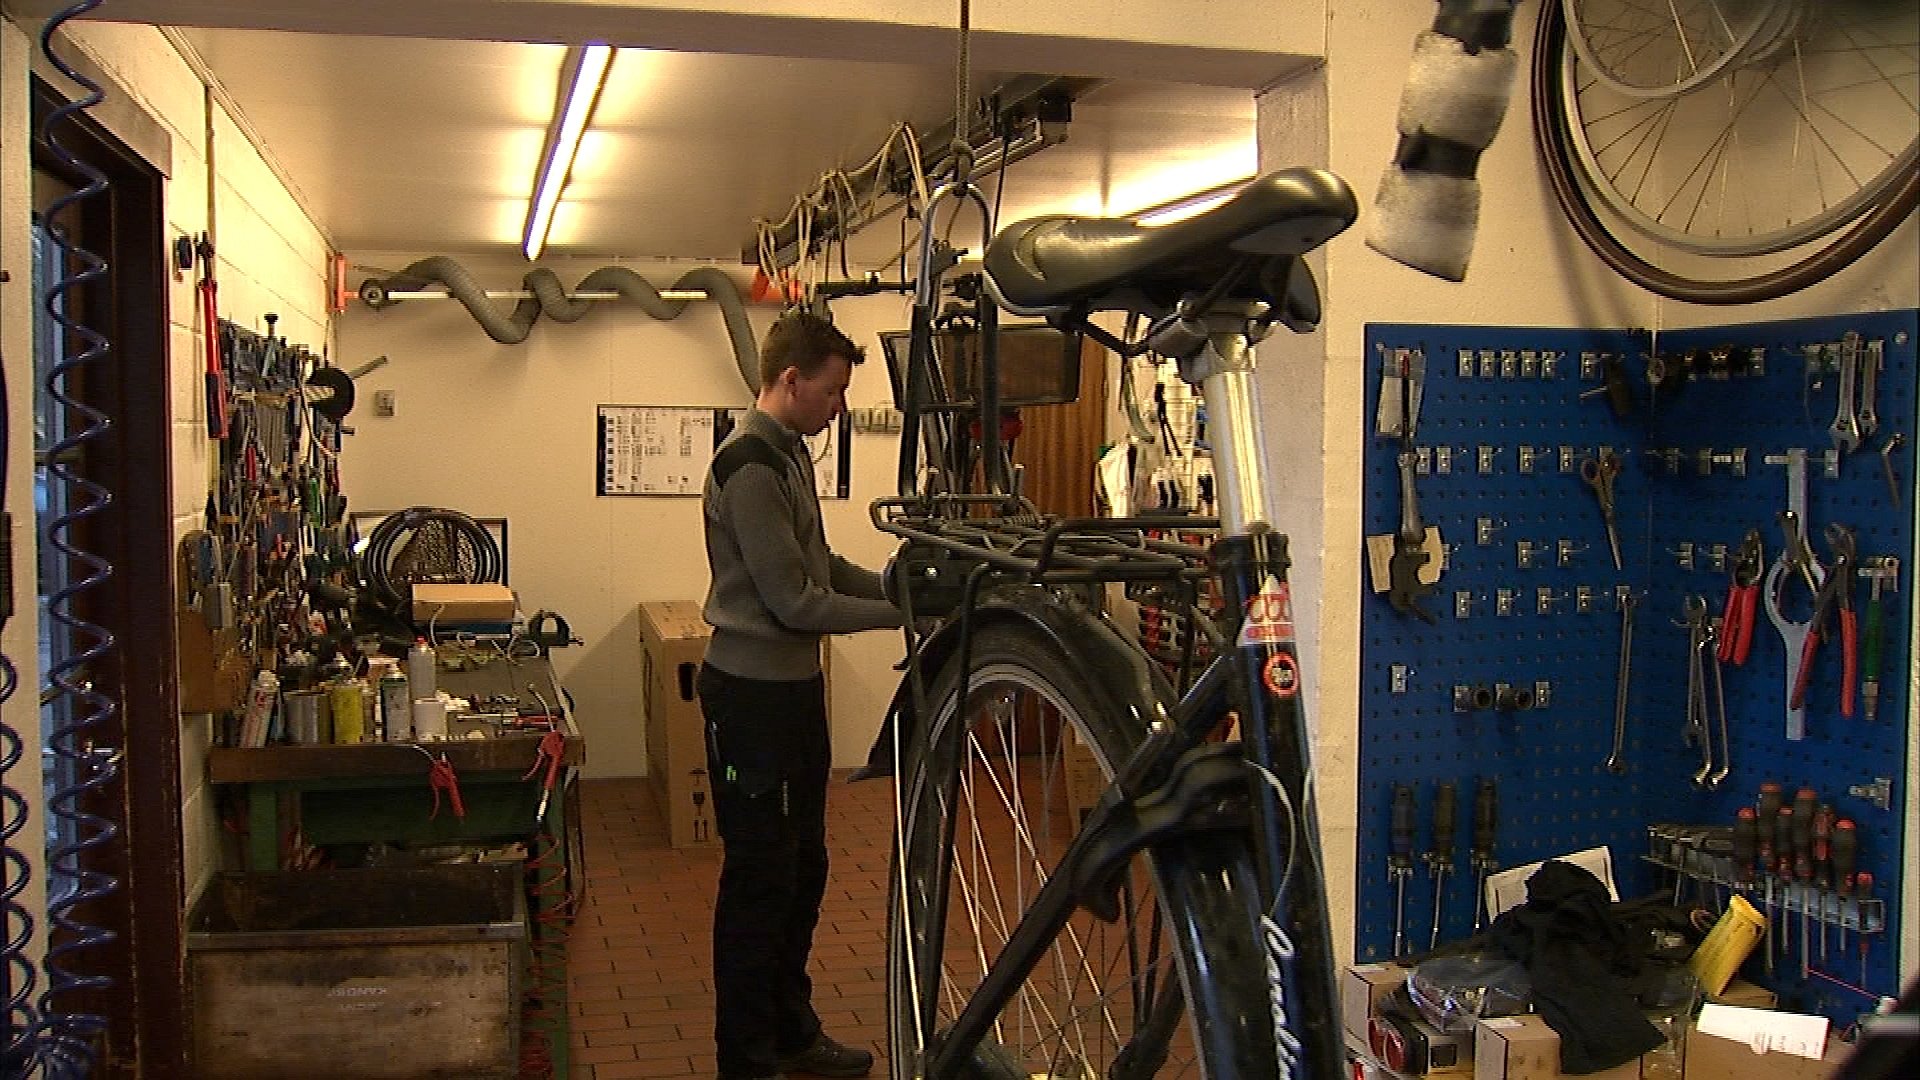 Meddele spids parti Din cykel kan være livsfarlig, hvis den ikke er vinterklar | TV2 Fyn